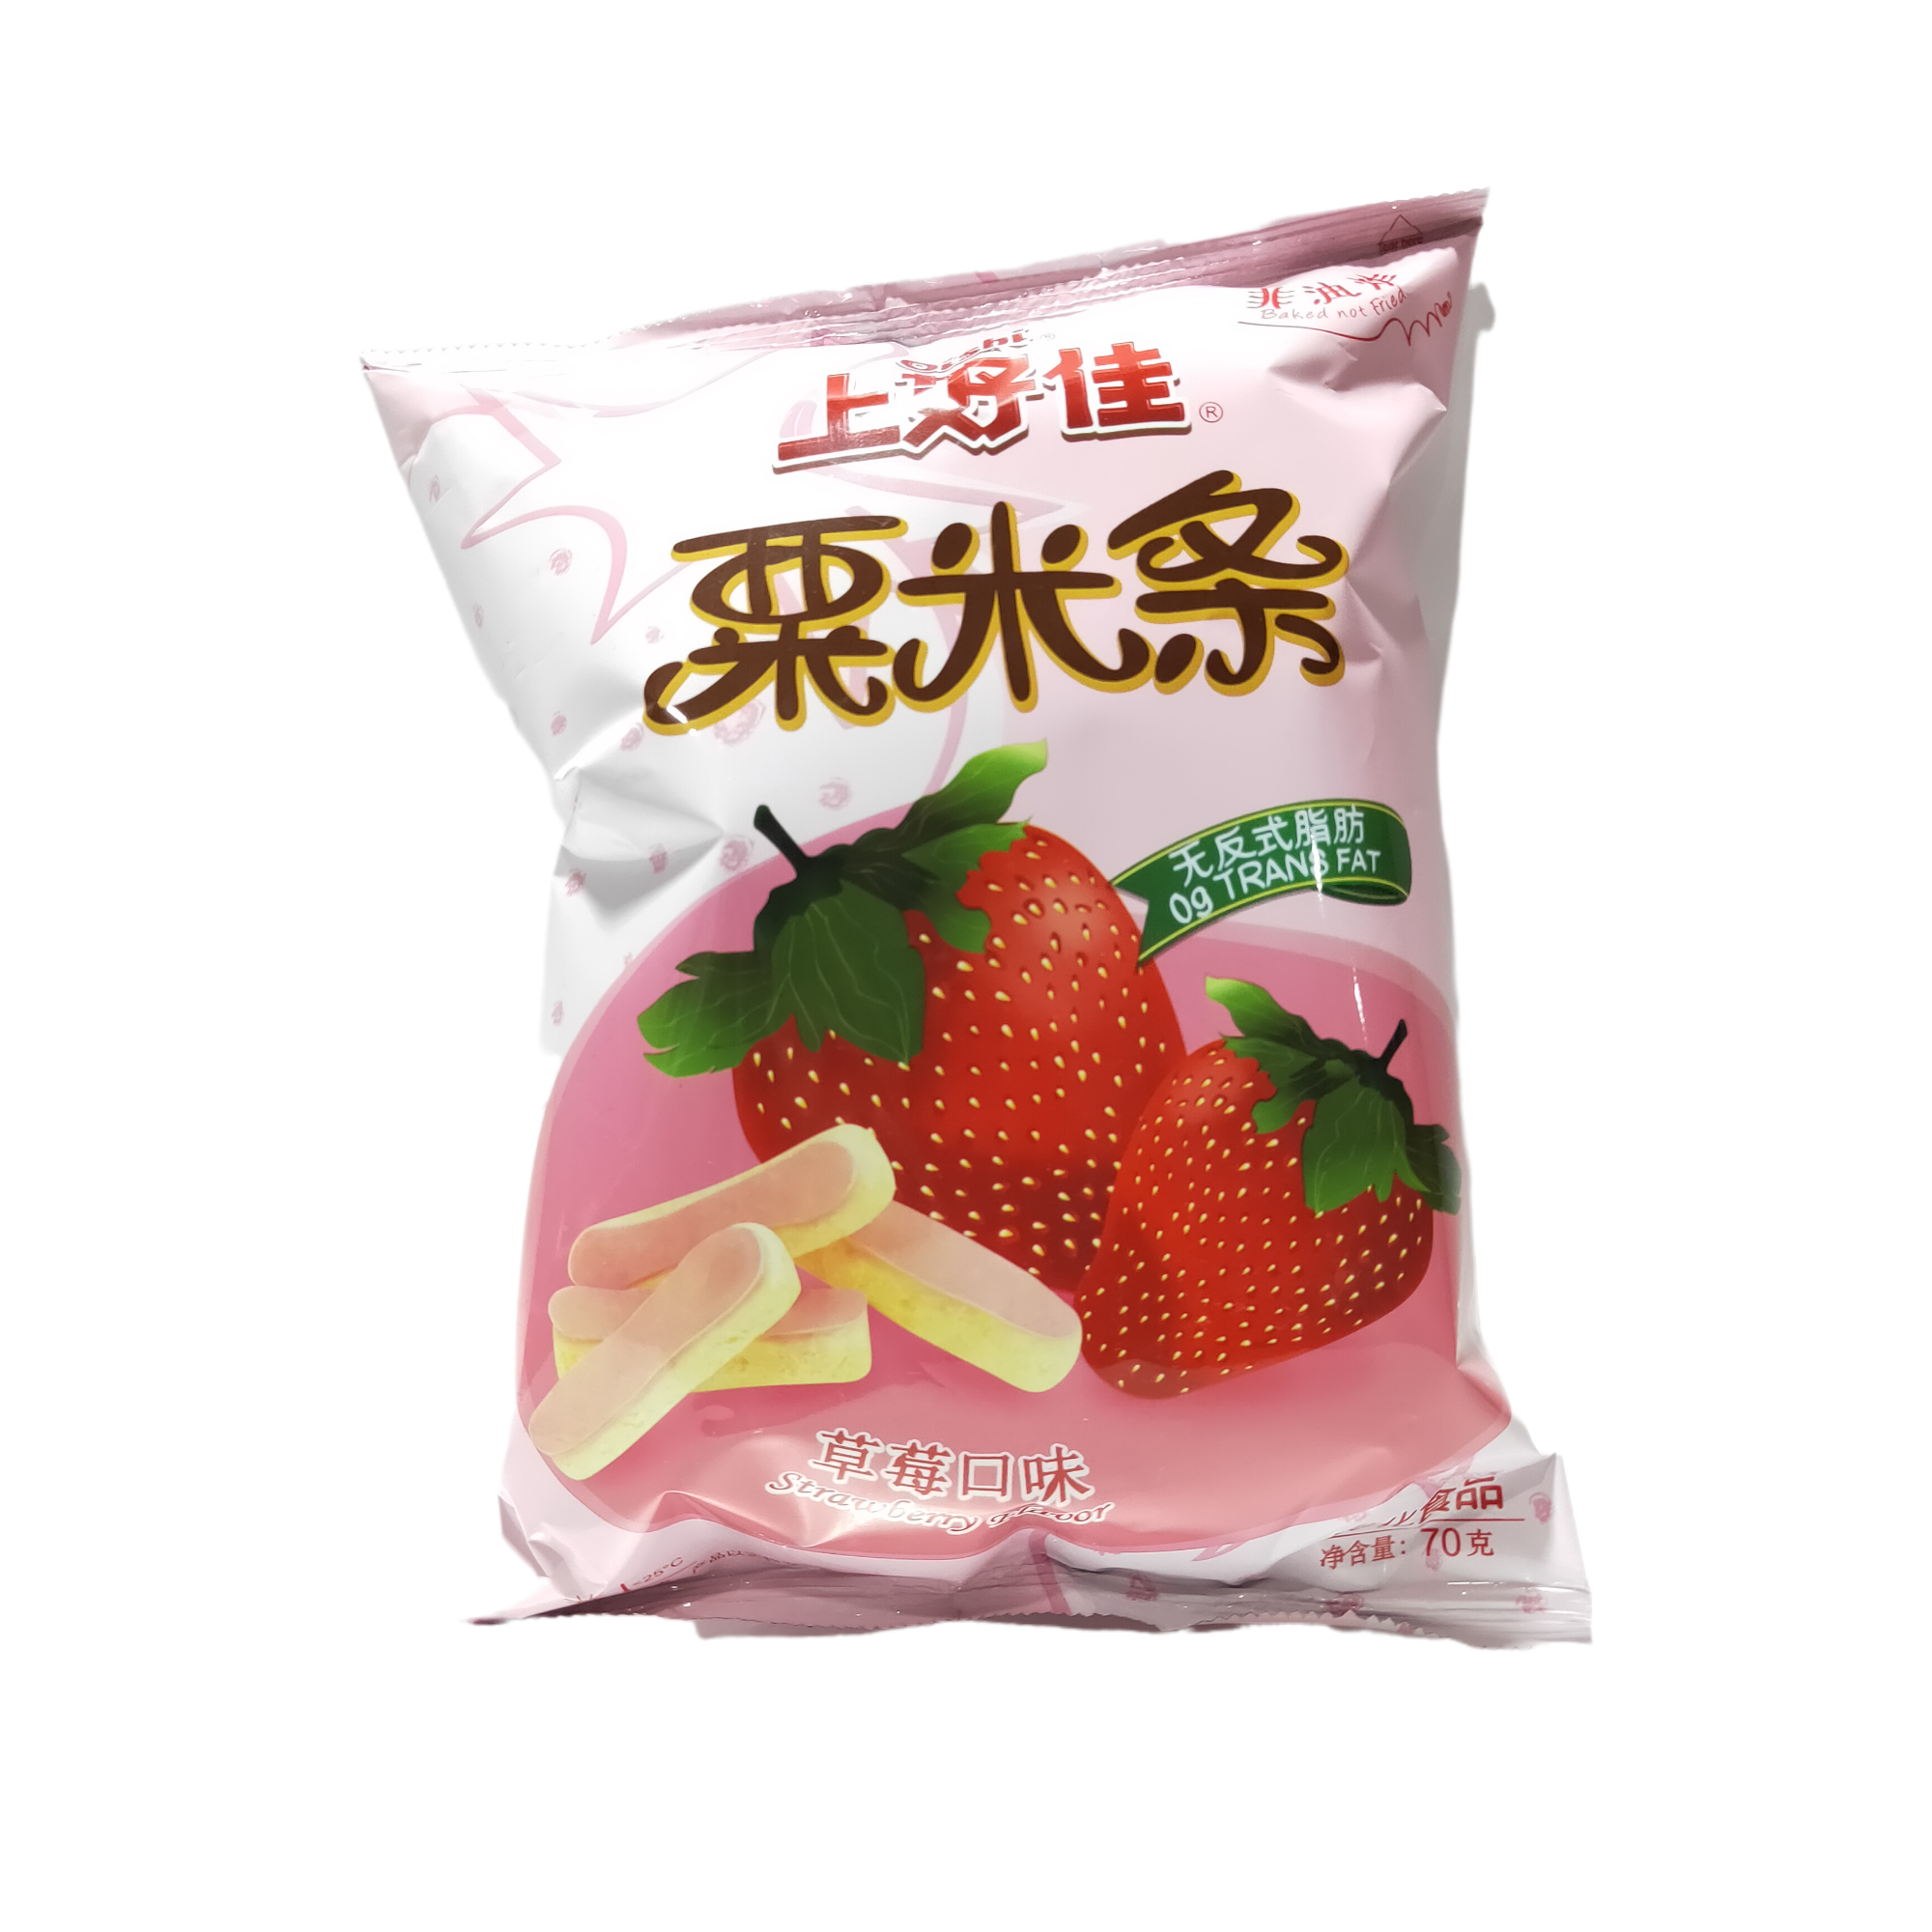 【上好佳粟米条草莓味】1袋(优选直供)